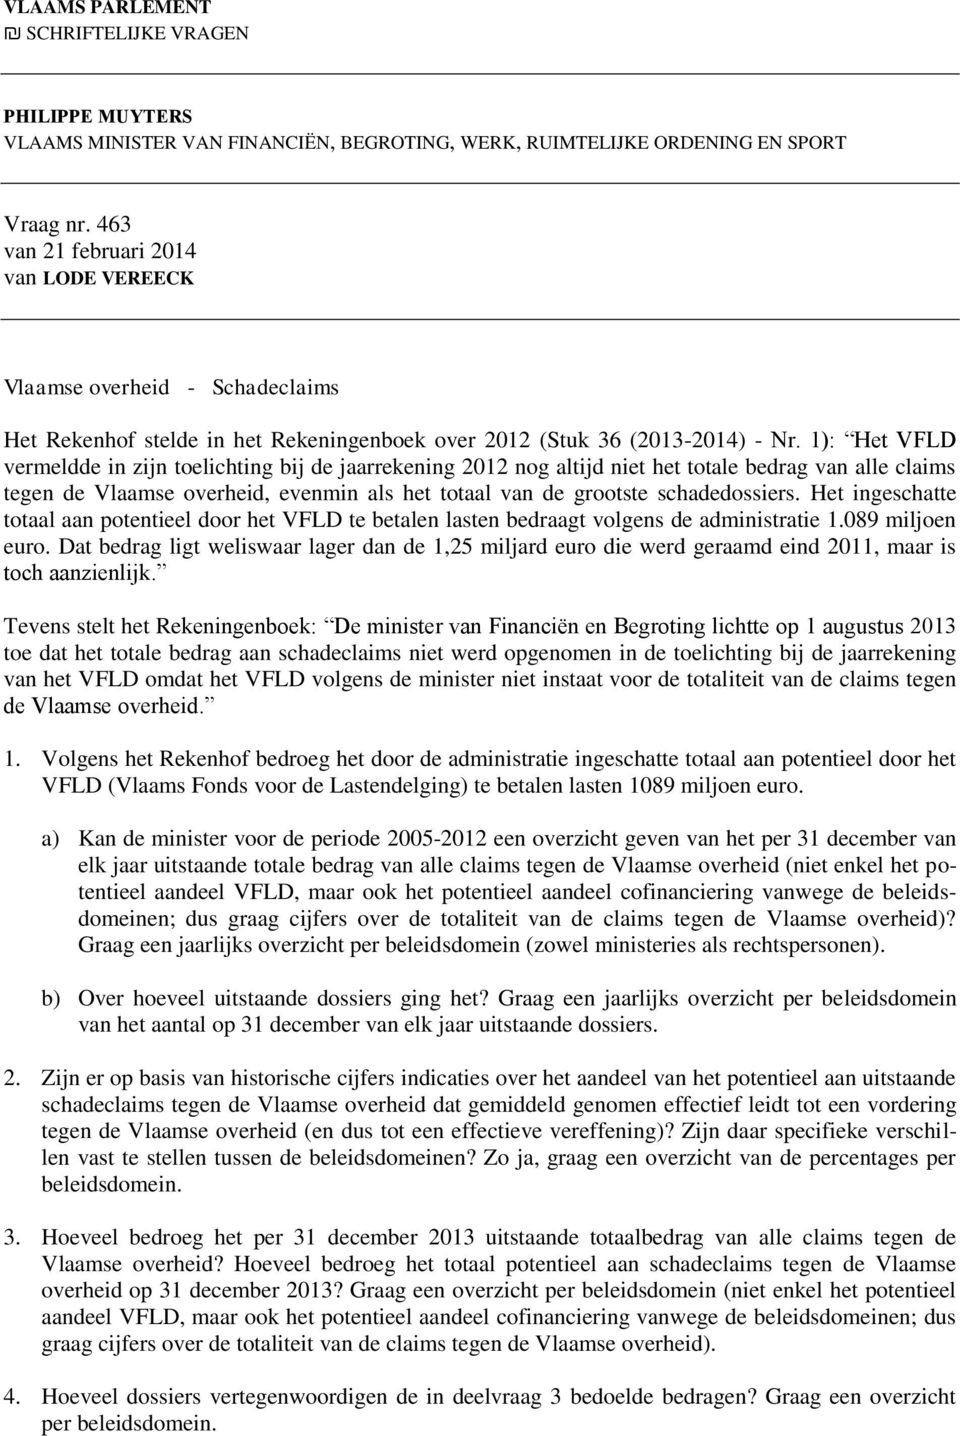 1): Het VFLD vermeldde in zijn toelichting bij de jaarrekening 2012 nog altijd niet het totale bedrag van alle claims tegen de Vlaamse overheid, evenmin als het totaal van de grootste schadedossiers.